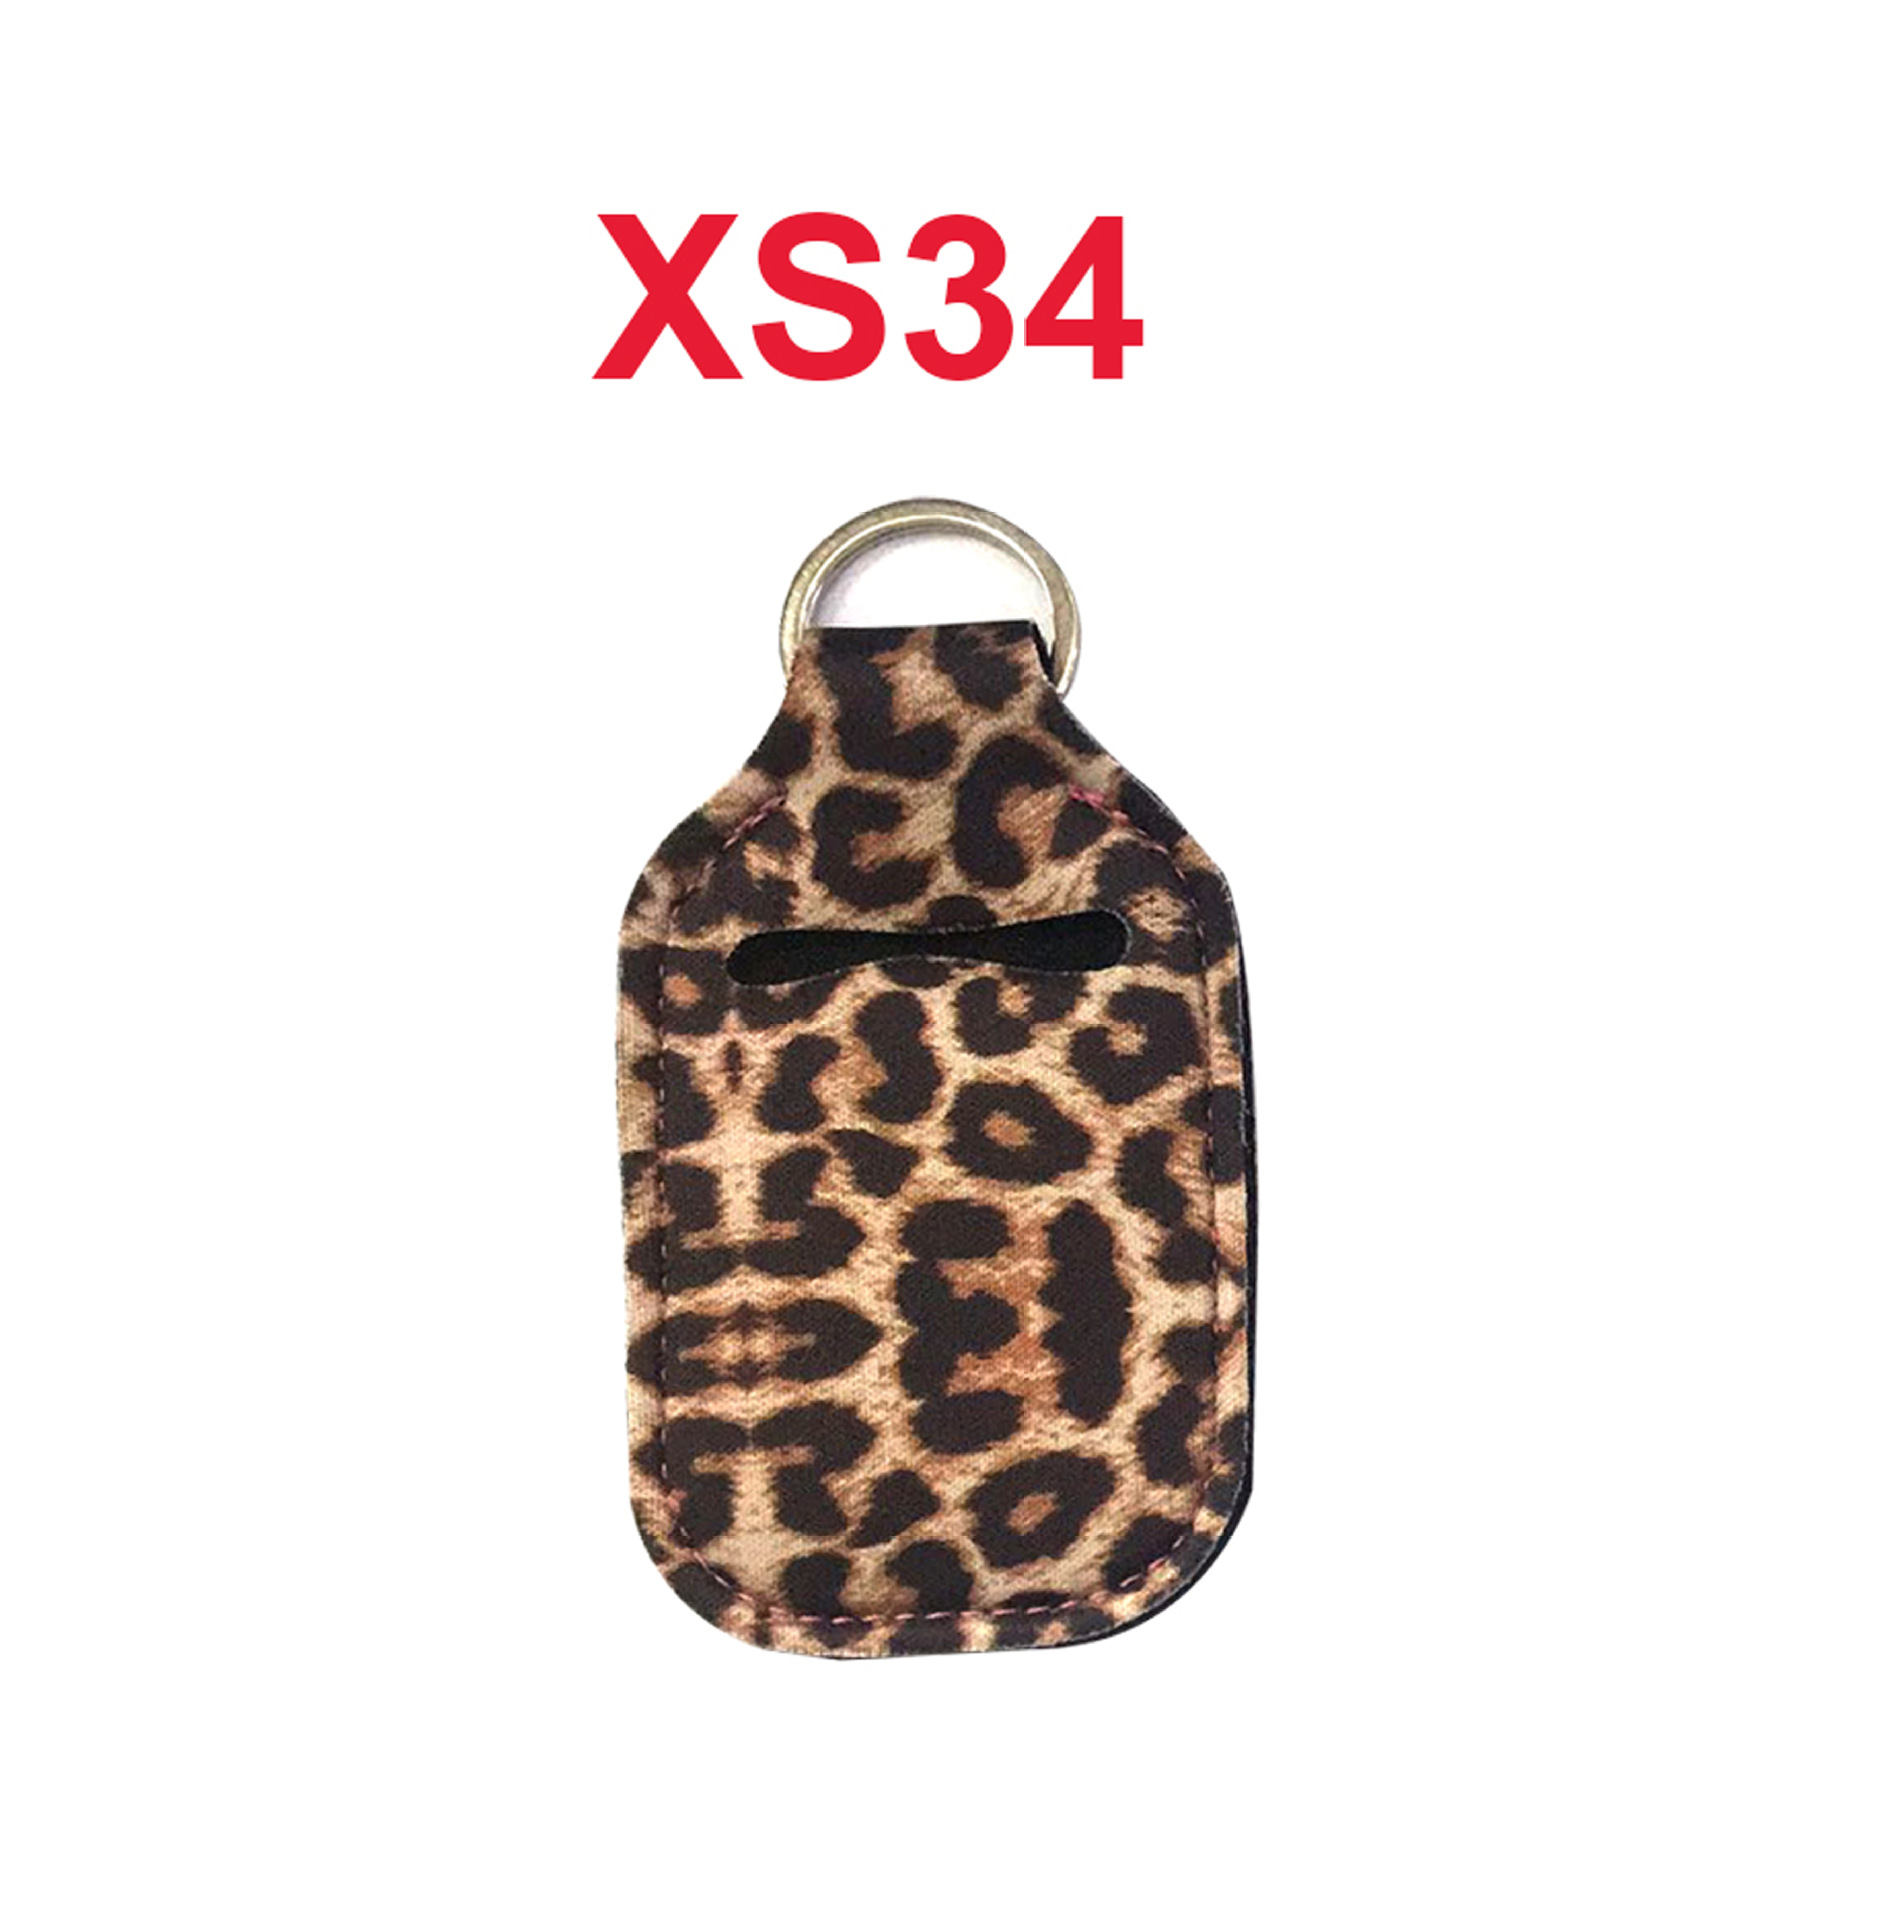 XS34